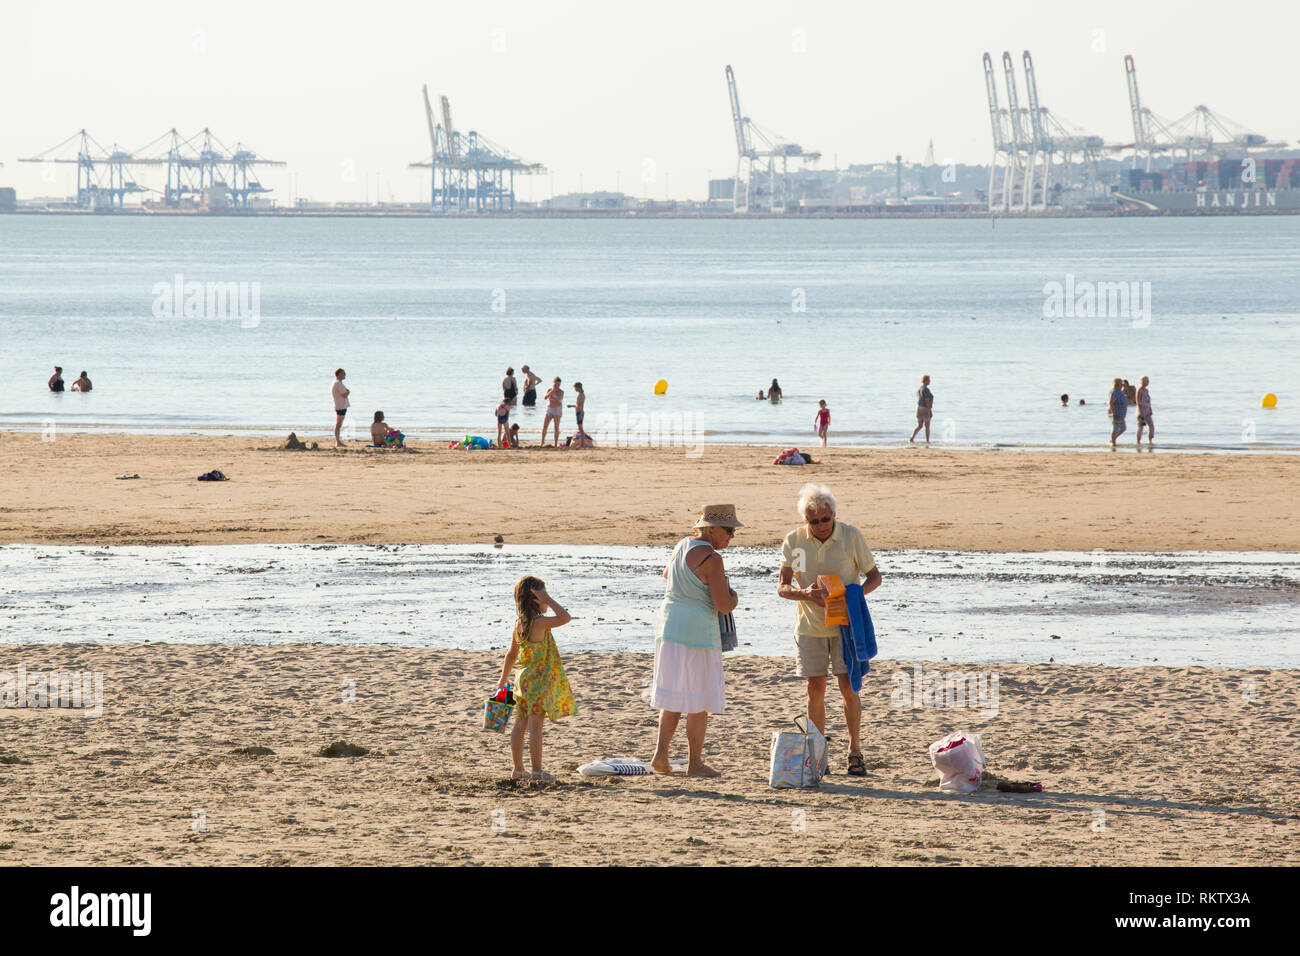 Los turistas disfrutar del sol del verano en la playa Plage de Butin, Honfleur, Francia con las grúas de contenedores del puerto de Le Havre en la Se Foto de stock